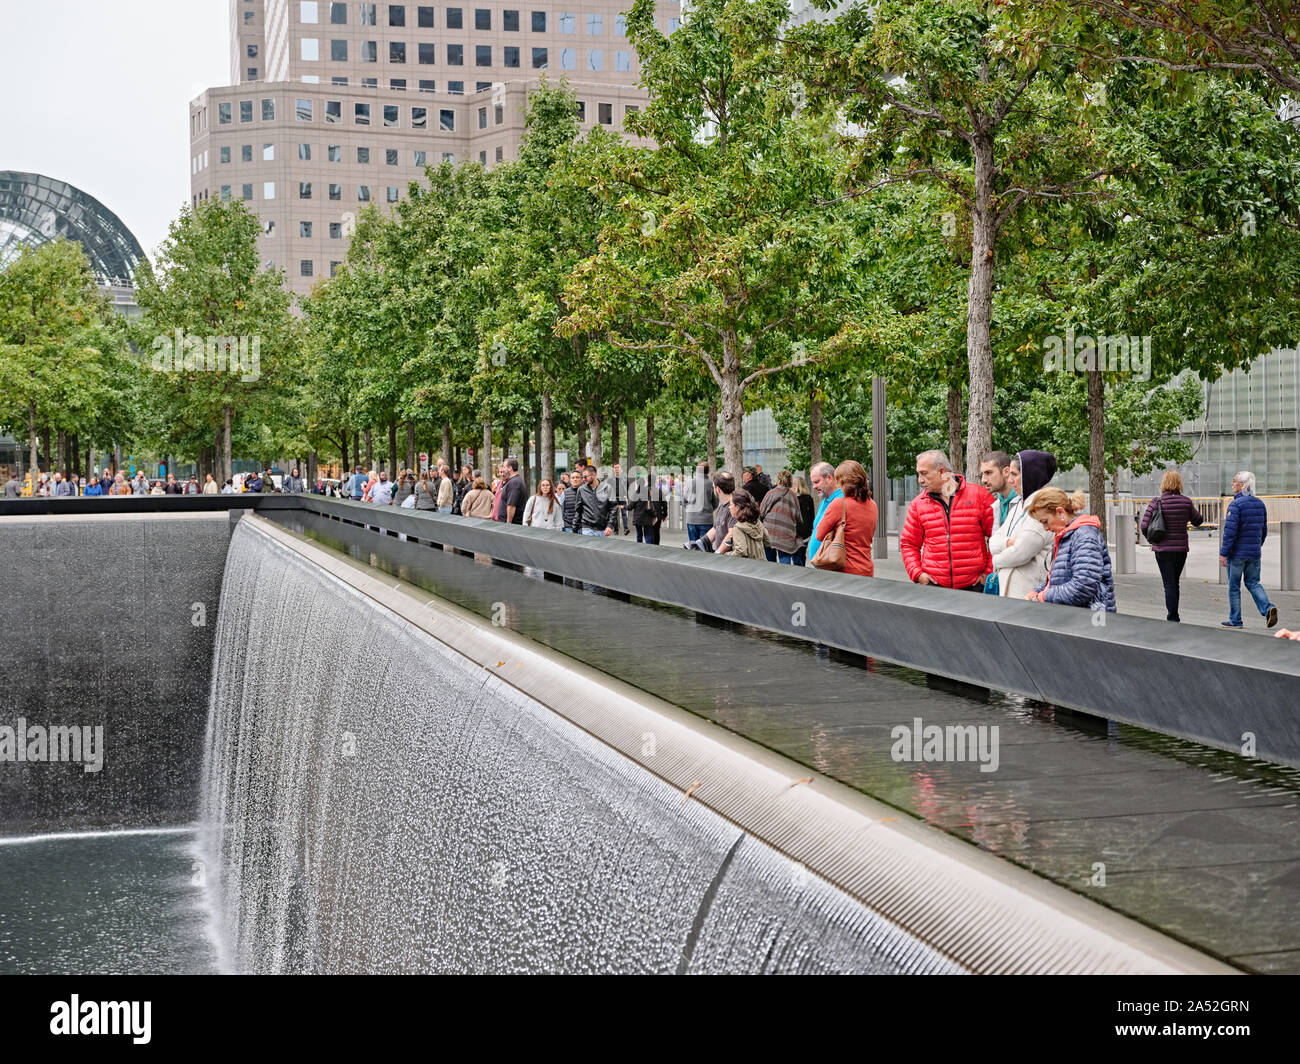 911 Gedenkstätte New York zum Gedenken an den 11. September 2001 Angriffe, die 2,977 Leute getötet, und das WTC Bombardierung 1993, die sechs getötet. Stockfoto